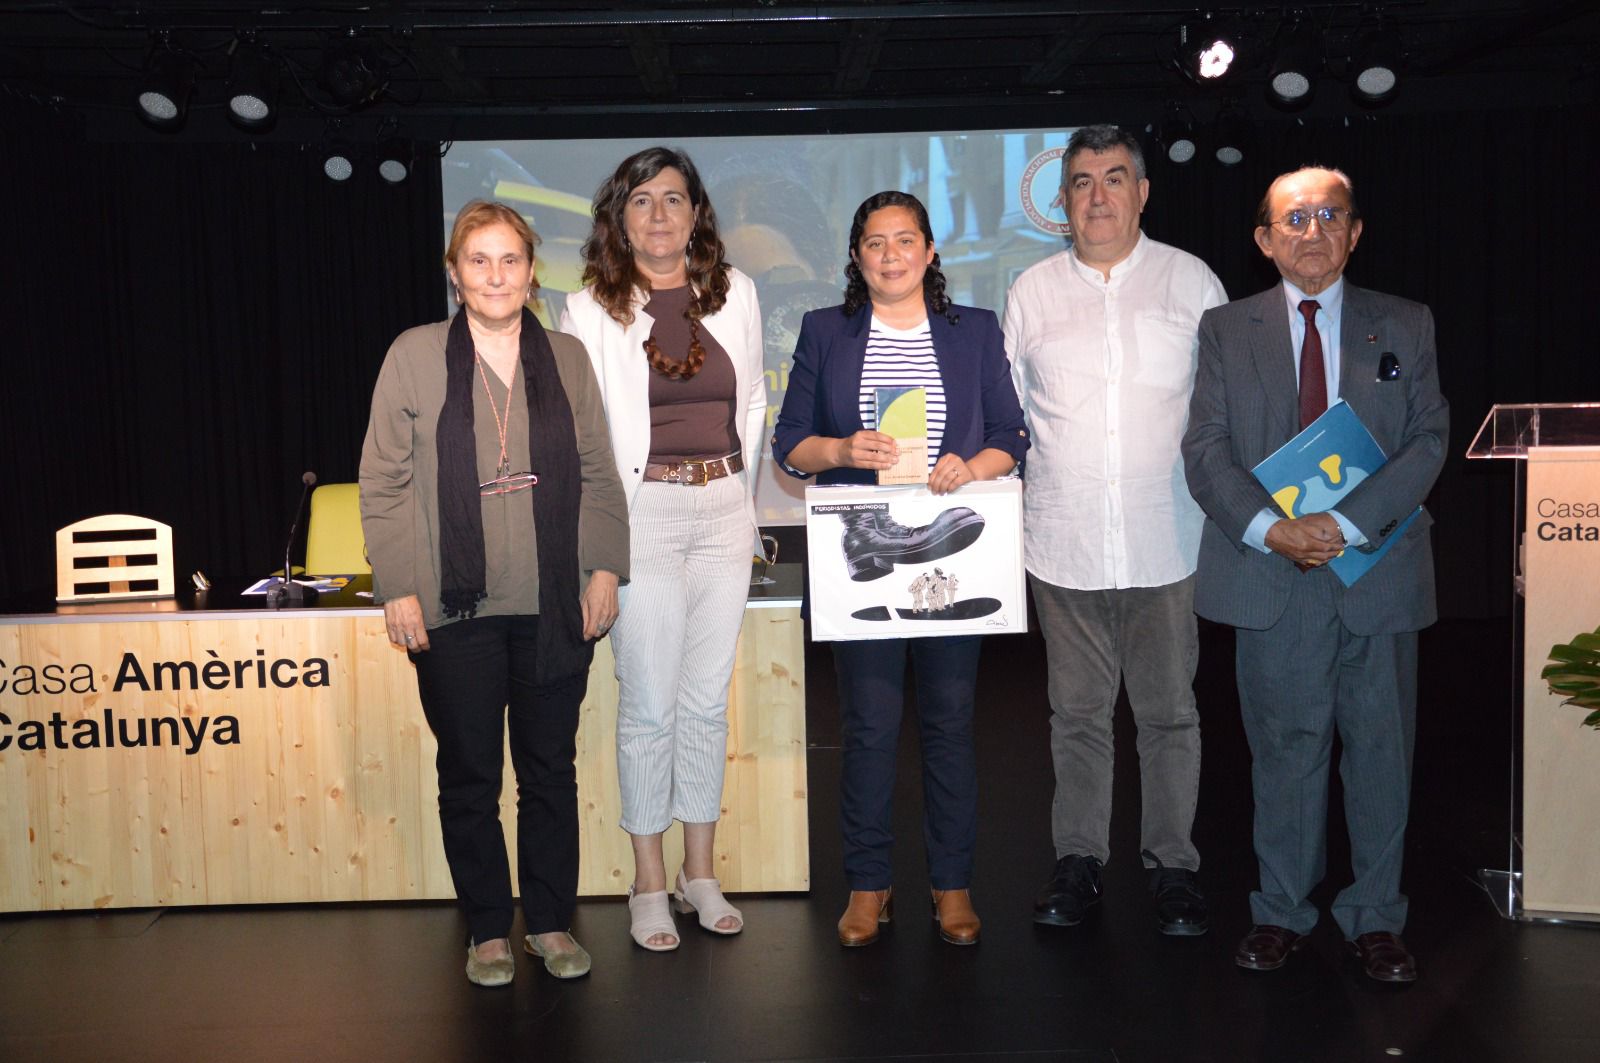 ANP es galardonada internacionalmente por defensa de la Libertad de Prensa en Perú